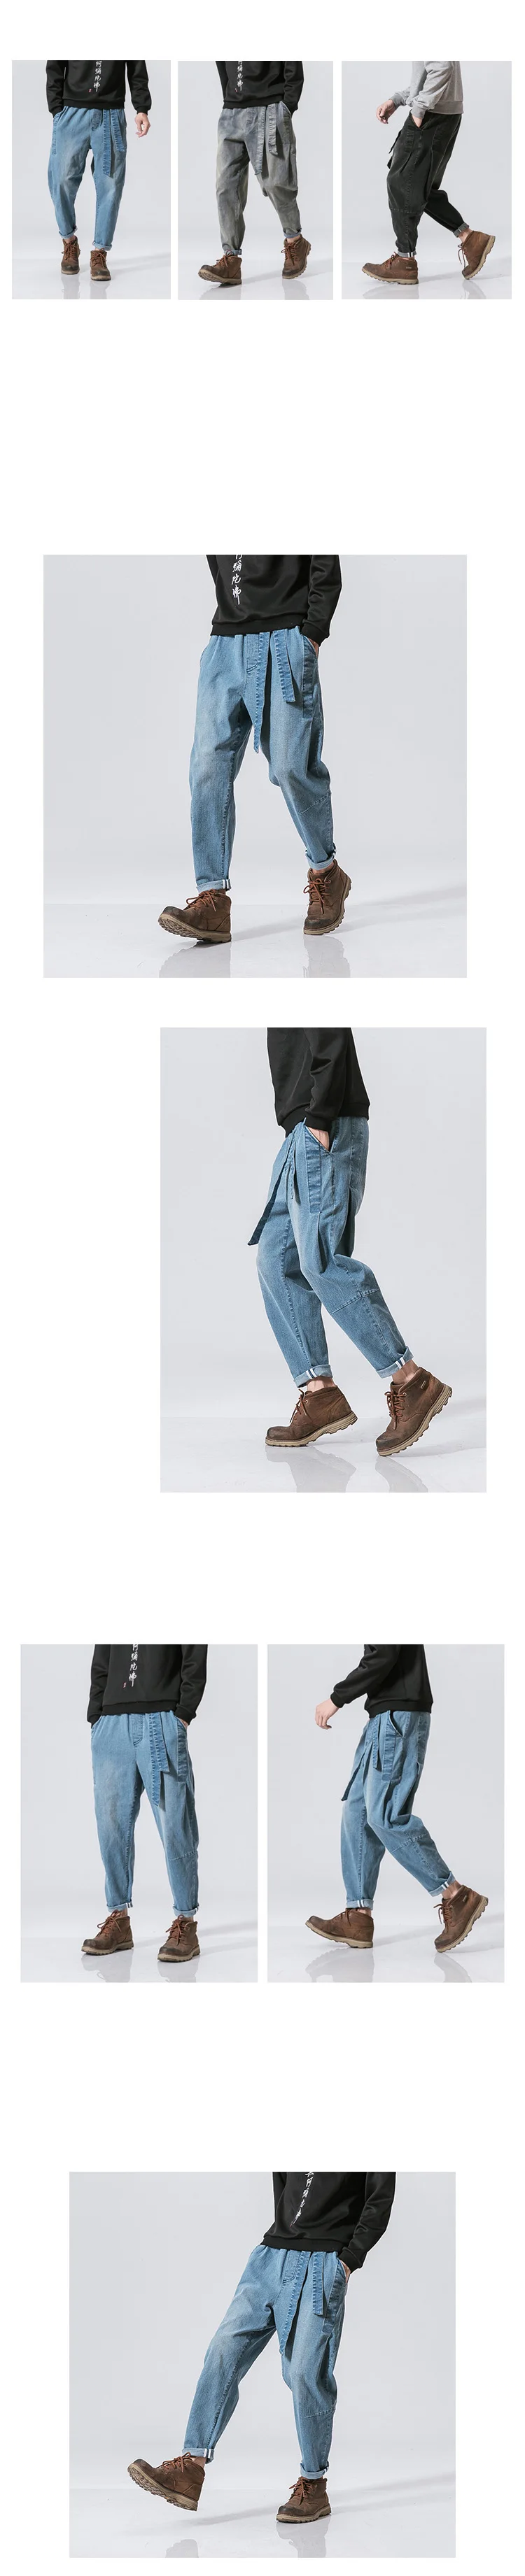 Новинка 2017 года осень Повседневные штаны для мужчин Для мужчин Дамские шаровары модные штаны Slim Fit брендовая одежда плюс Размеры M-5XL